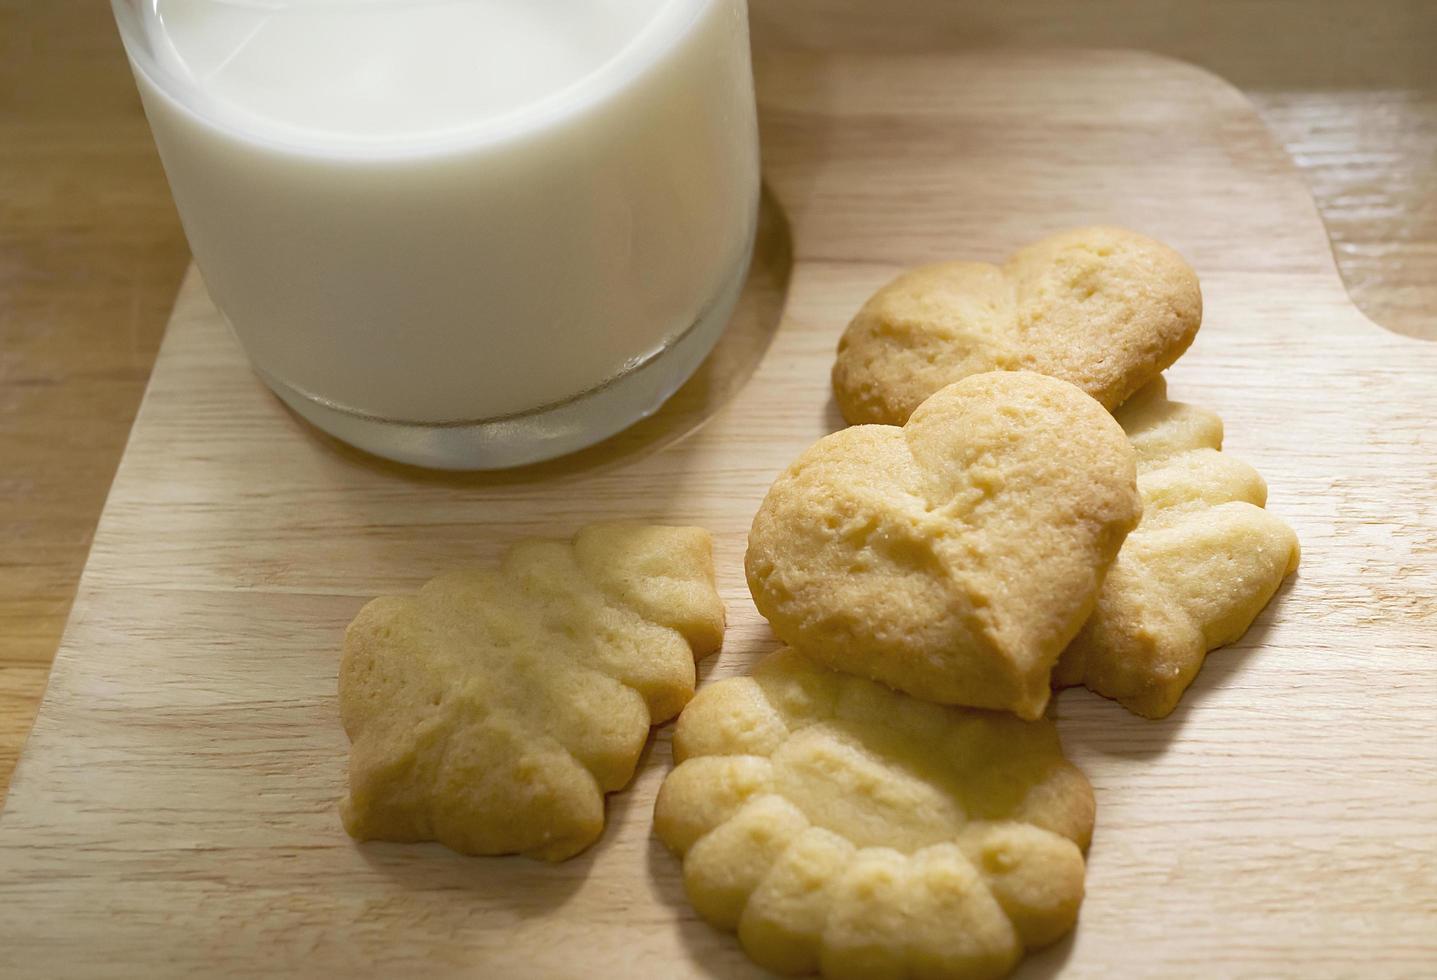 biscuits au beurre avec du lait prêt à servir, collation croustillante fraîcheur laitière photographie de boulangerie pour l'utilisation de fond de dessert sucré alimentaire photo